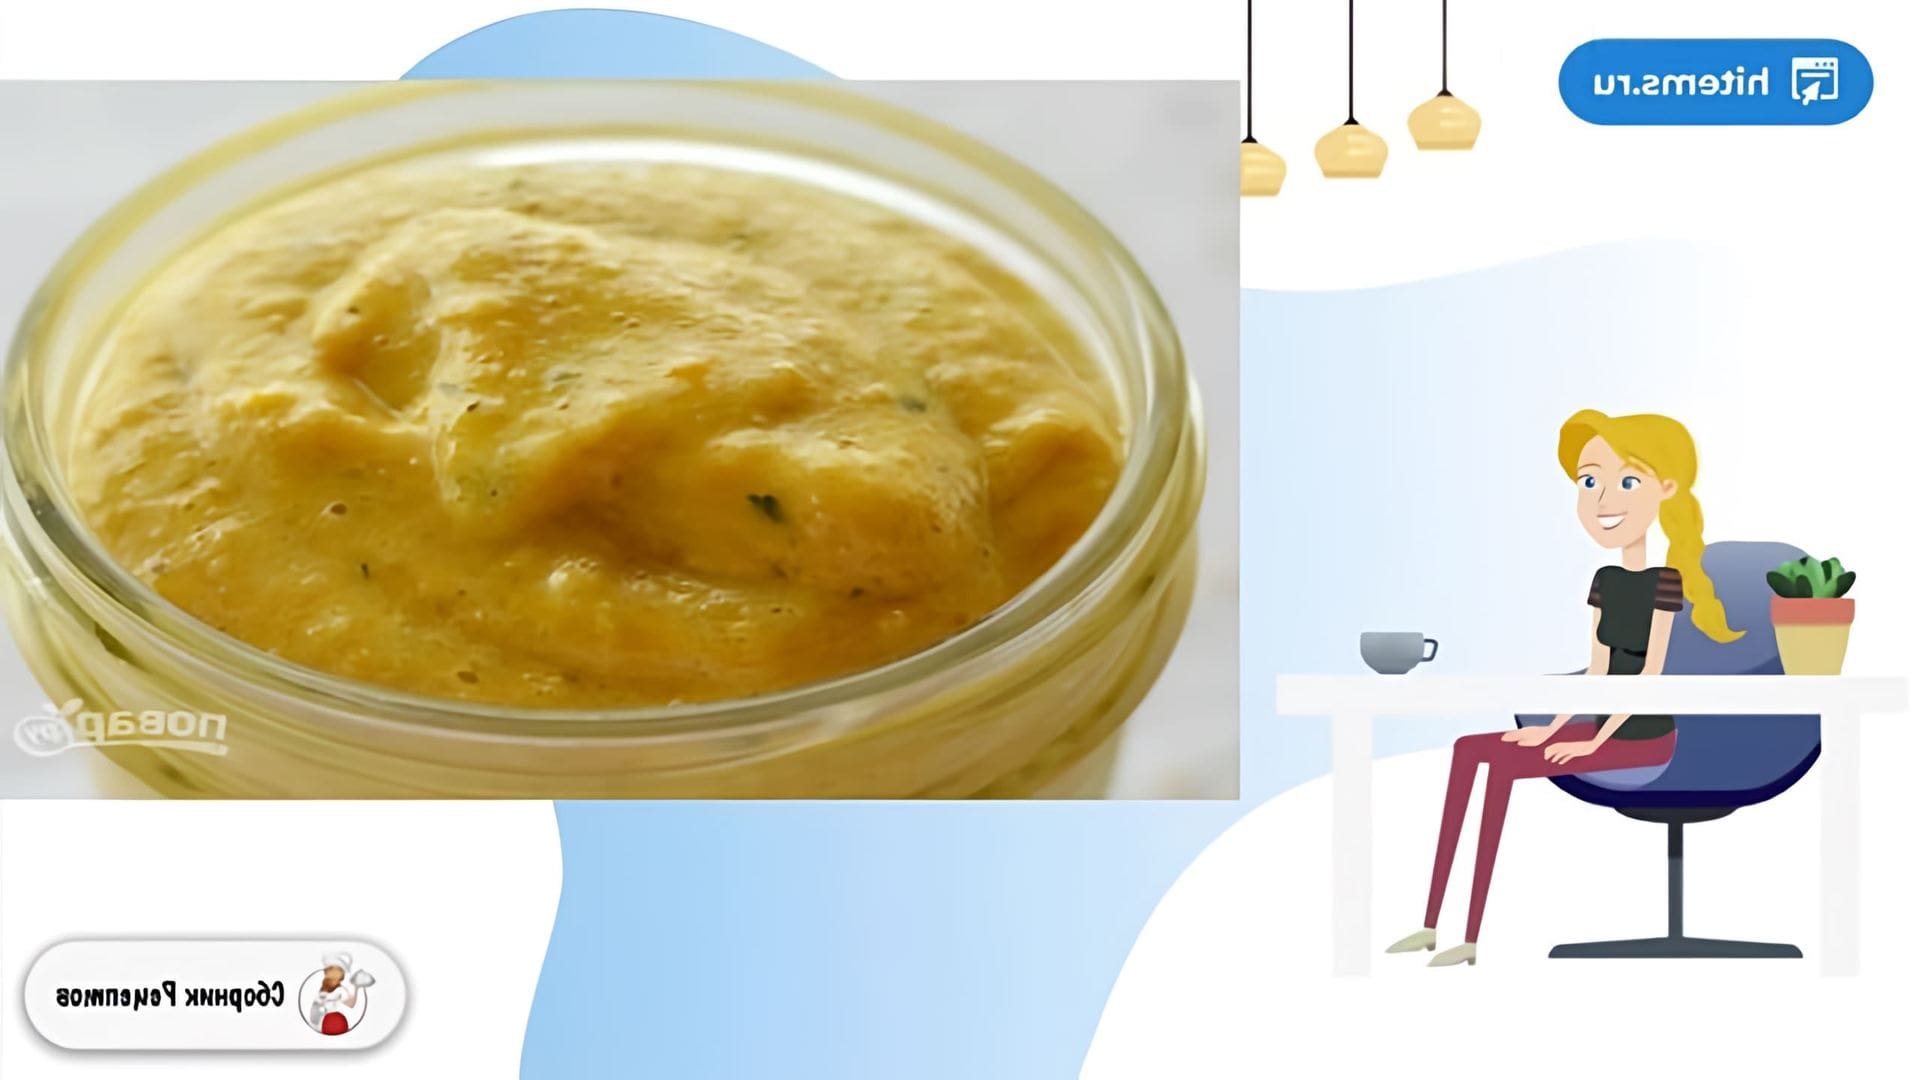 В этом видео рассказывается о простом способе приготовления сладкой горчицы своими руками